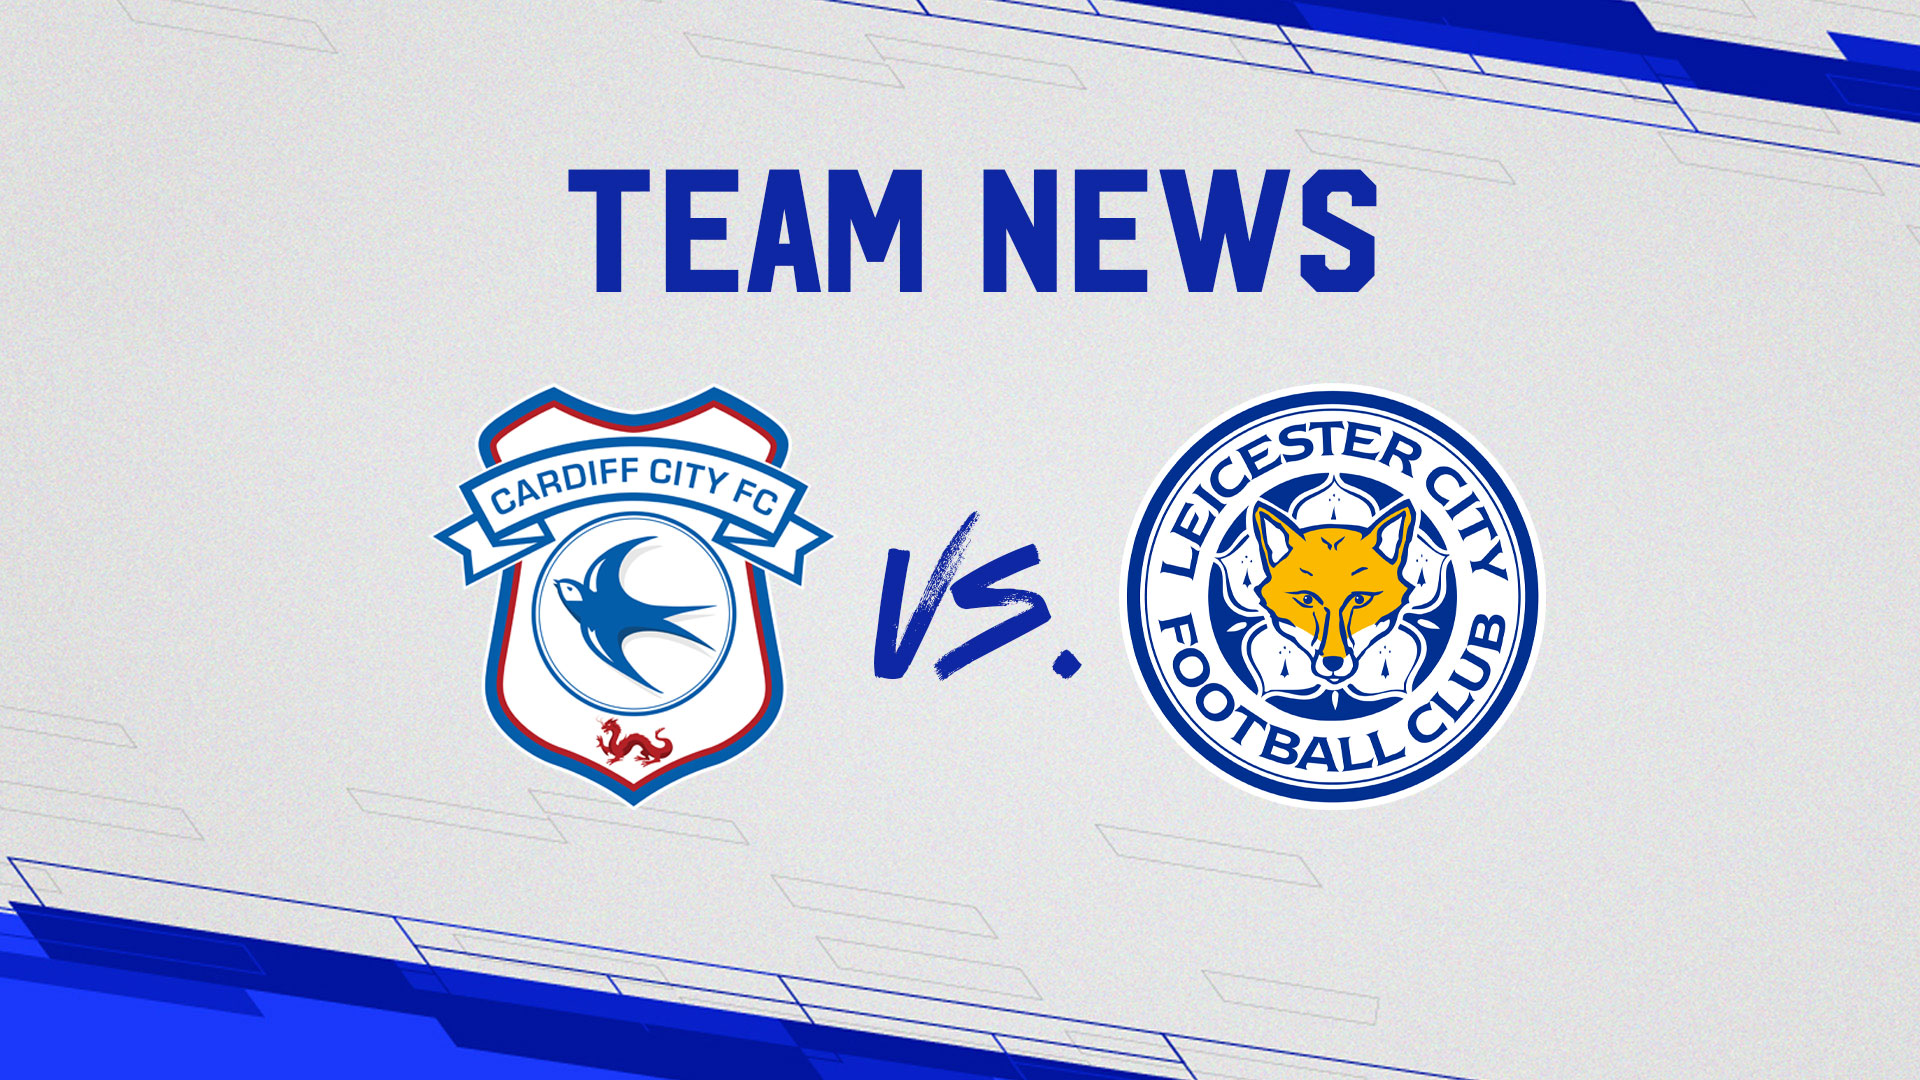 Team News: Cardiff City vs. Leicester City